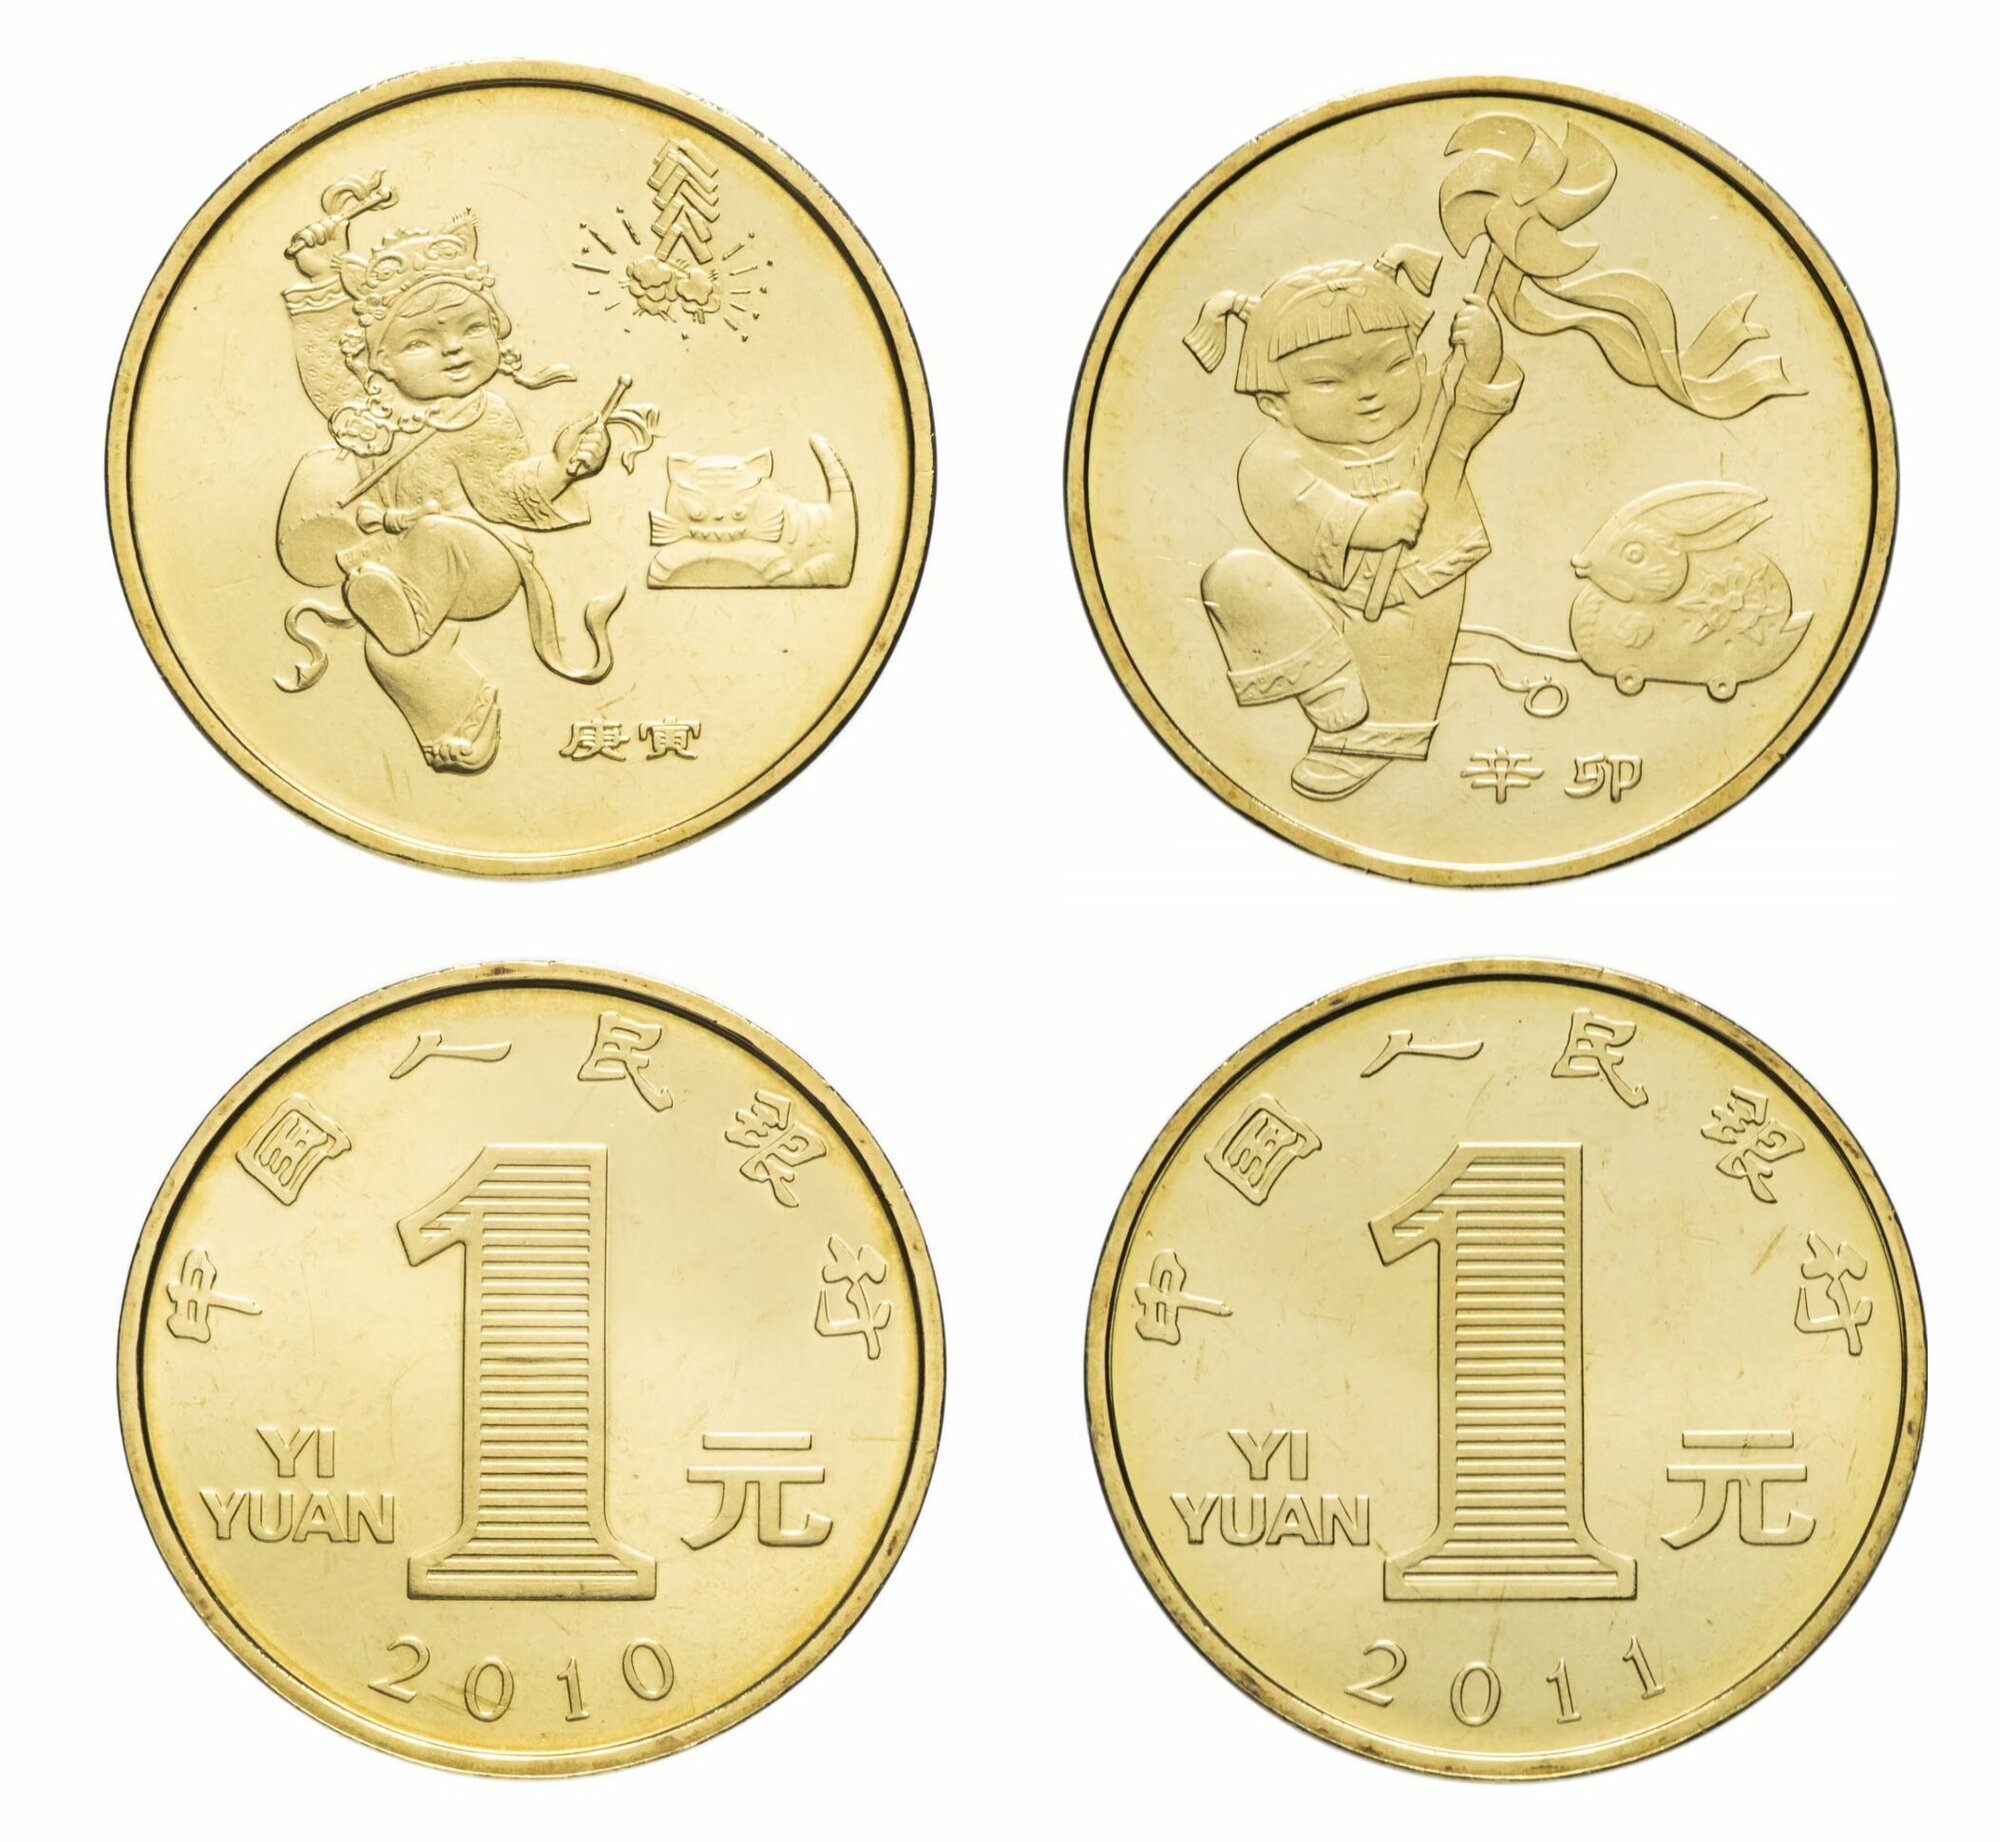 Китай набор юбилейных монет 1 юань 2010-2011 г. в Лунный календарь состояние UNC (без обращения) в капсуле